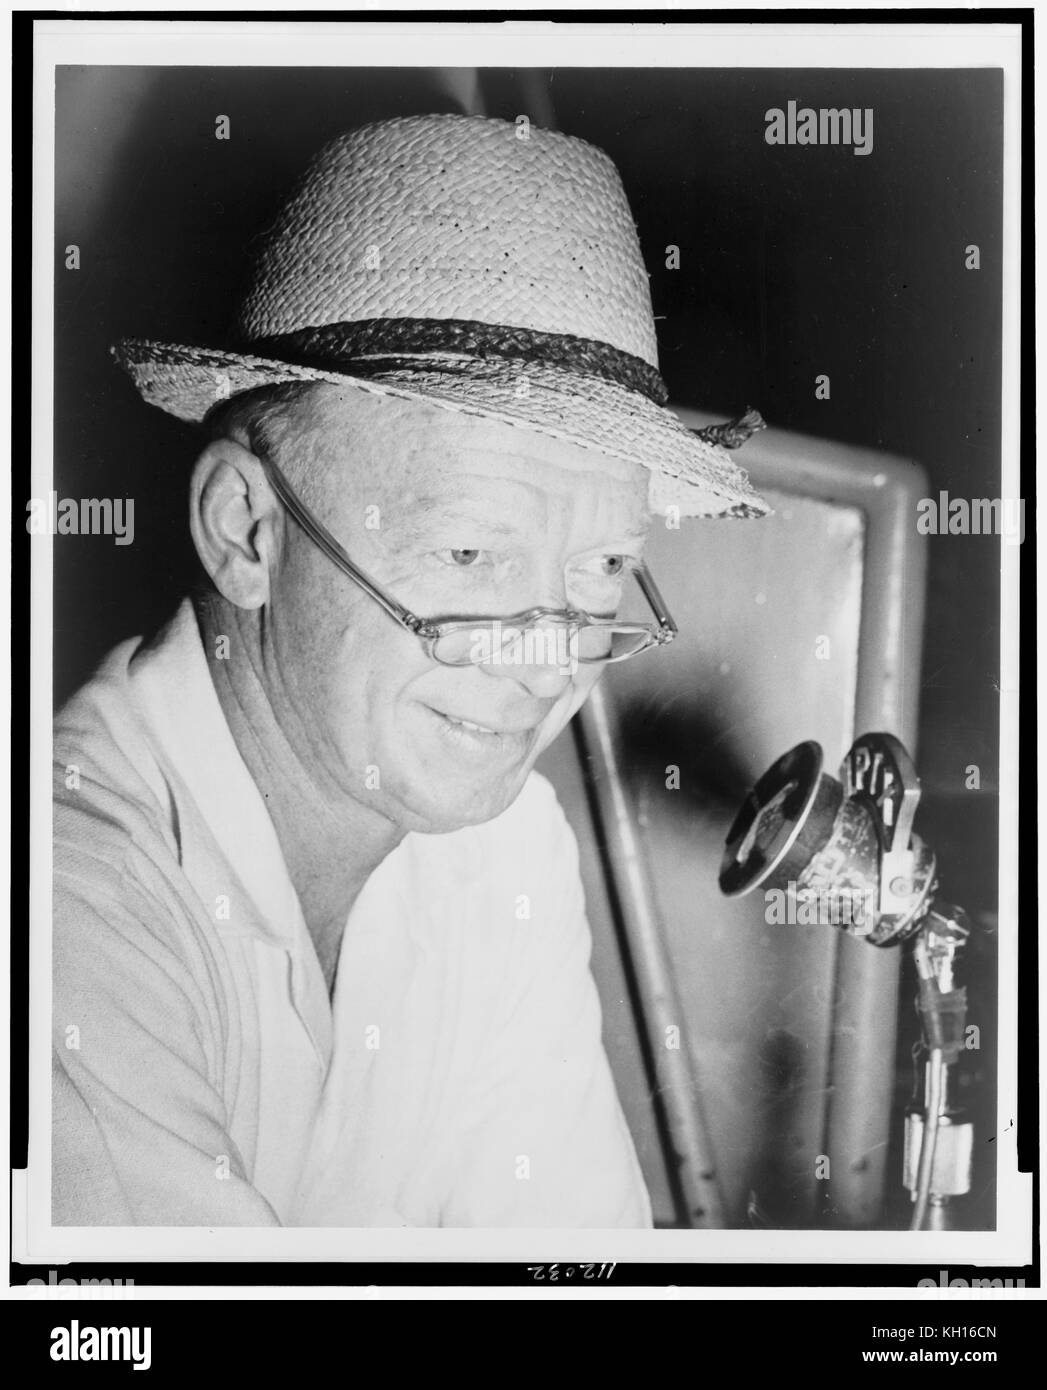 Walter Lanier 'Rojo' Barber (1908-1992), comentarista deportivo y jugada-por-jugada de Major League Baseball, Nueva York, NY, 1955. Foto por Al Ravenna Foto de stock